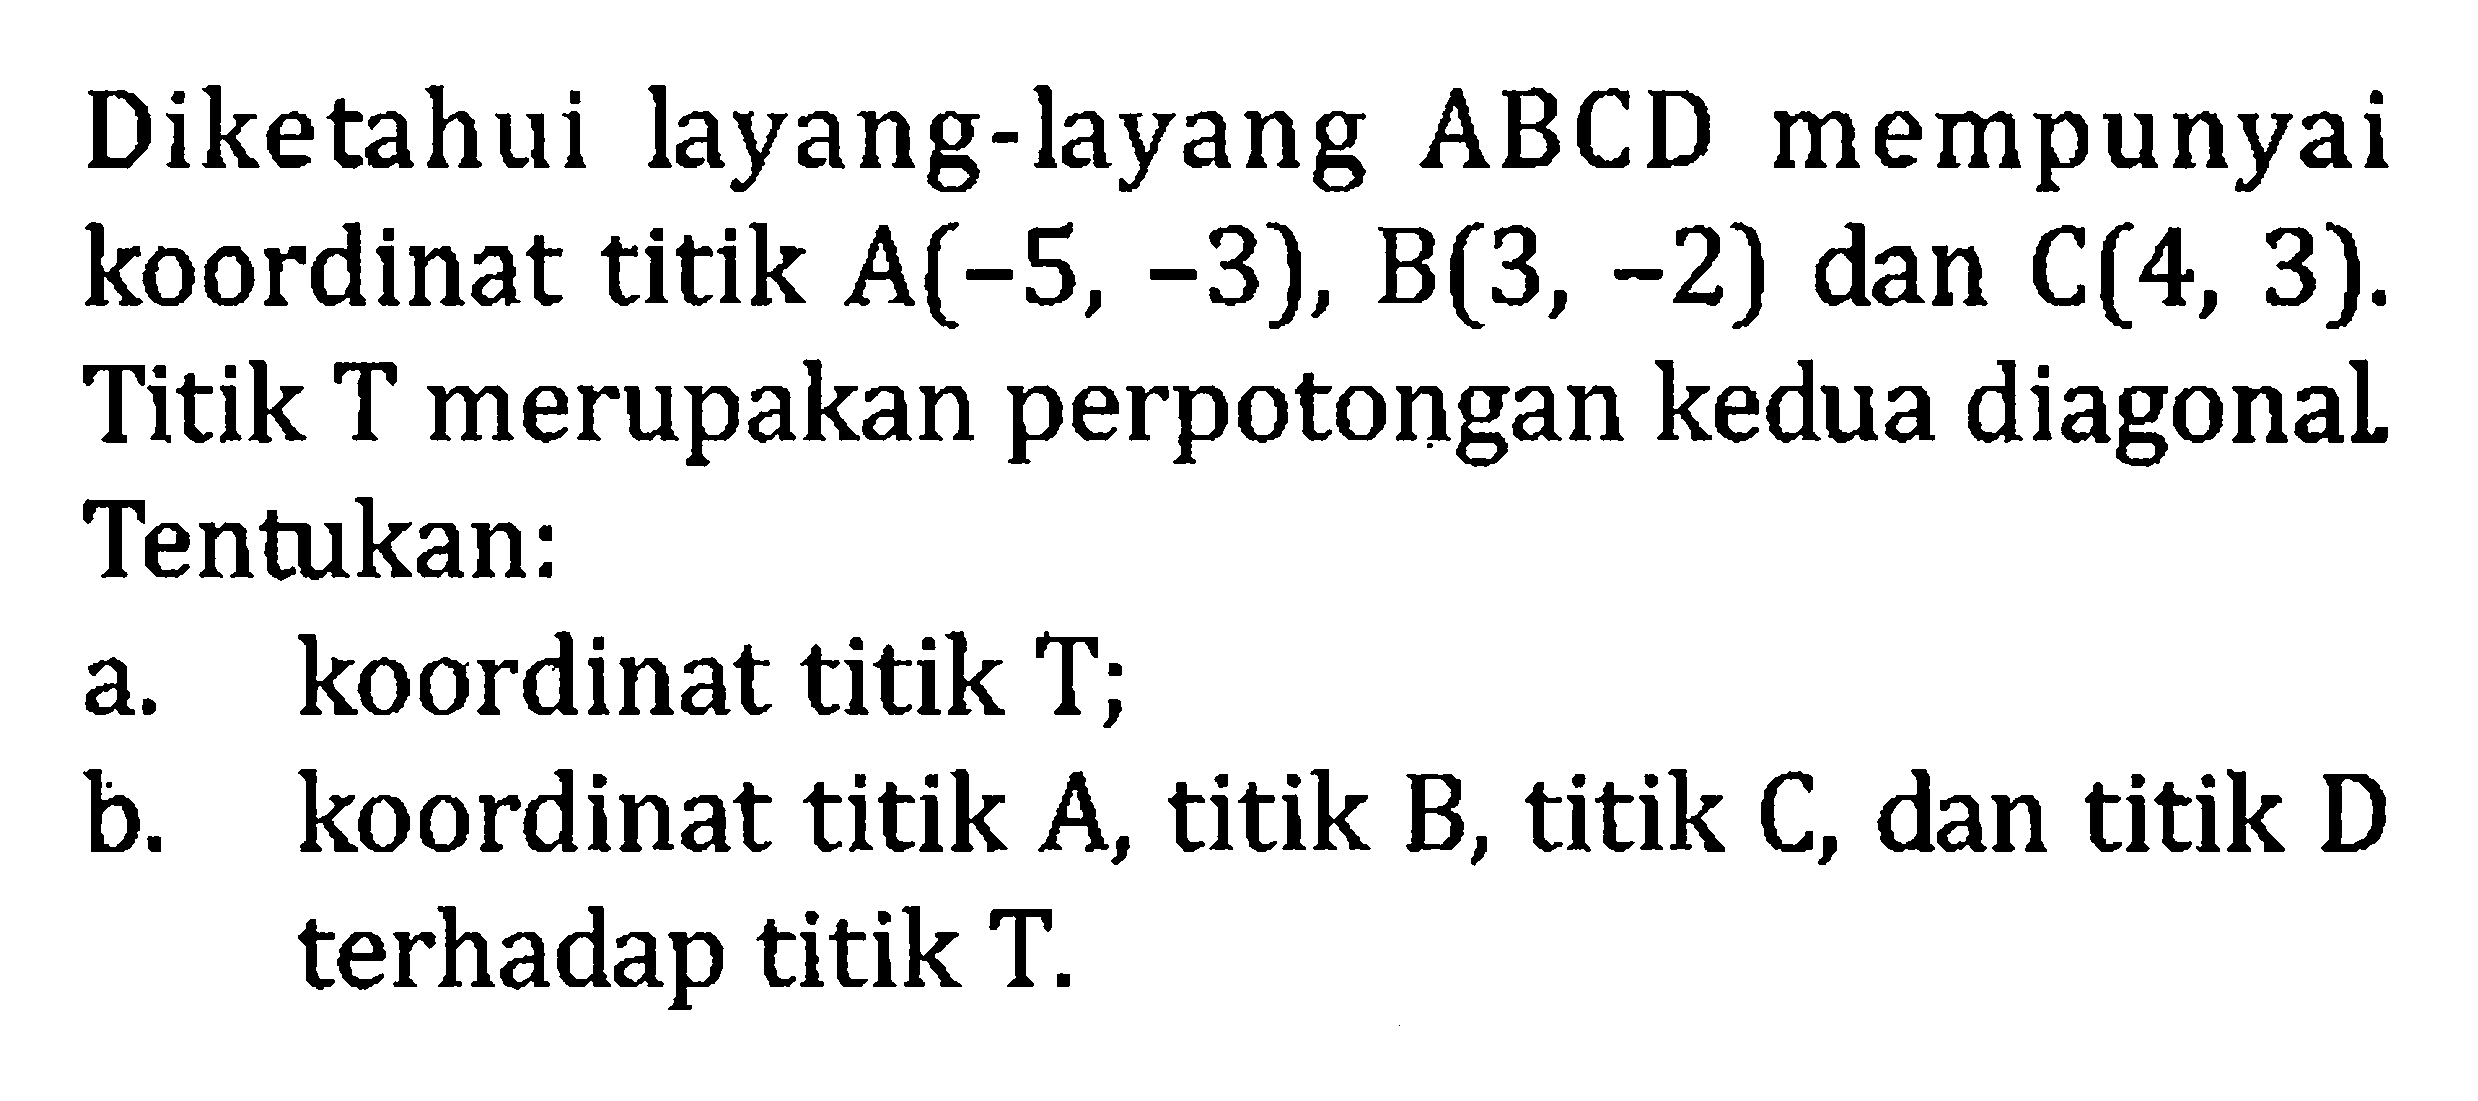 Diketahui layang-layang ABCD mempunyai koordinat titik A(-5, -3), B(3, -2) dan C(4, 3). Titik T merupakan perpotongan kedua diagonal. Tentukan: a. koordinat titik T; b. koordinat titik A, titik B, titik C, dan titik D terhadap titik T.